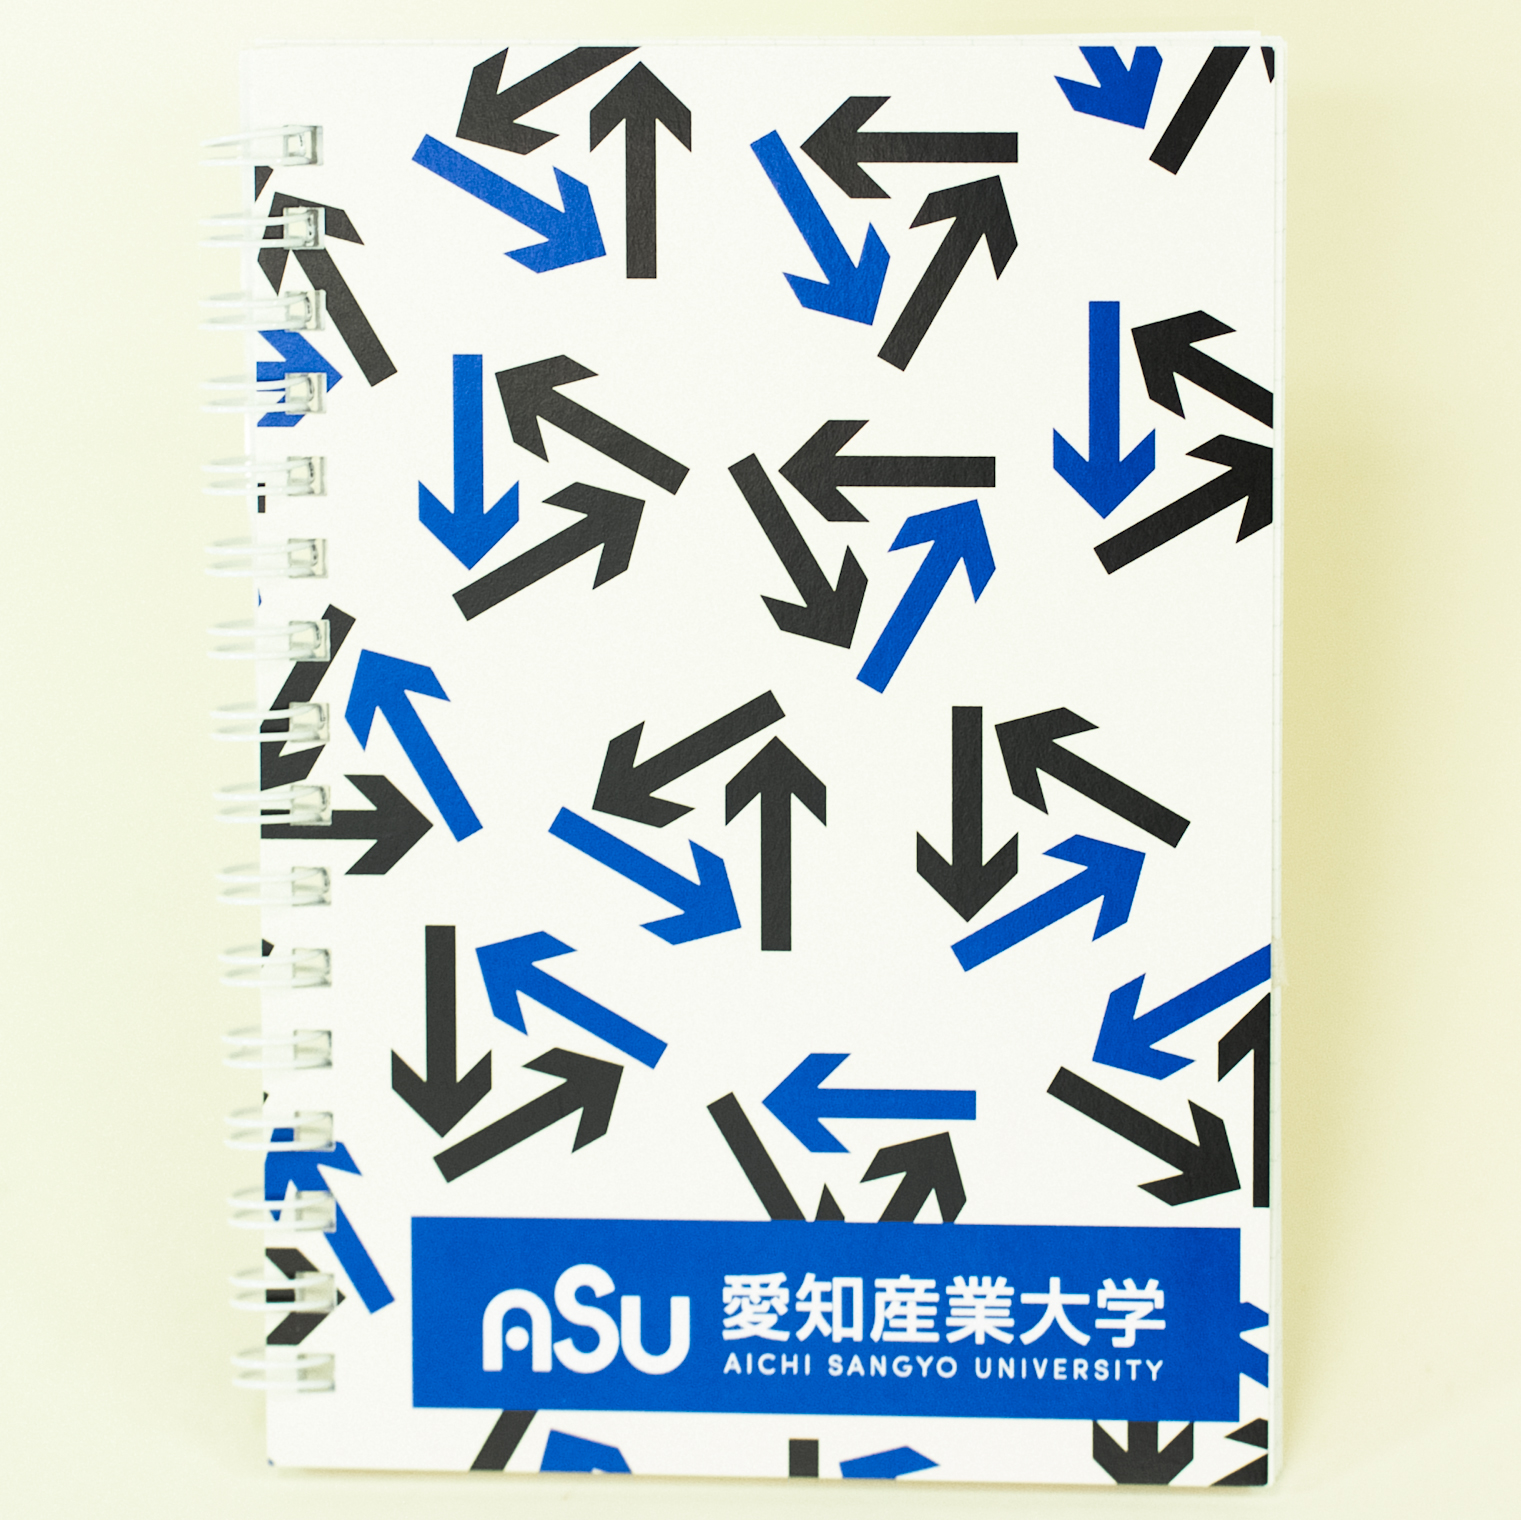 「愛知産業大学 様」製作のオリジナルノート